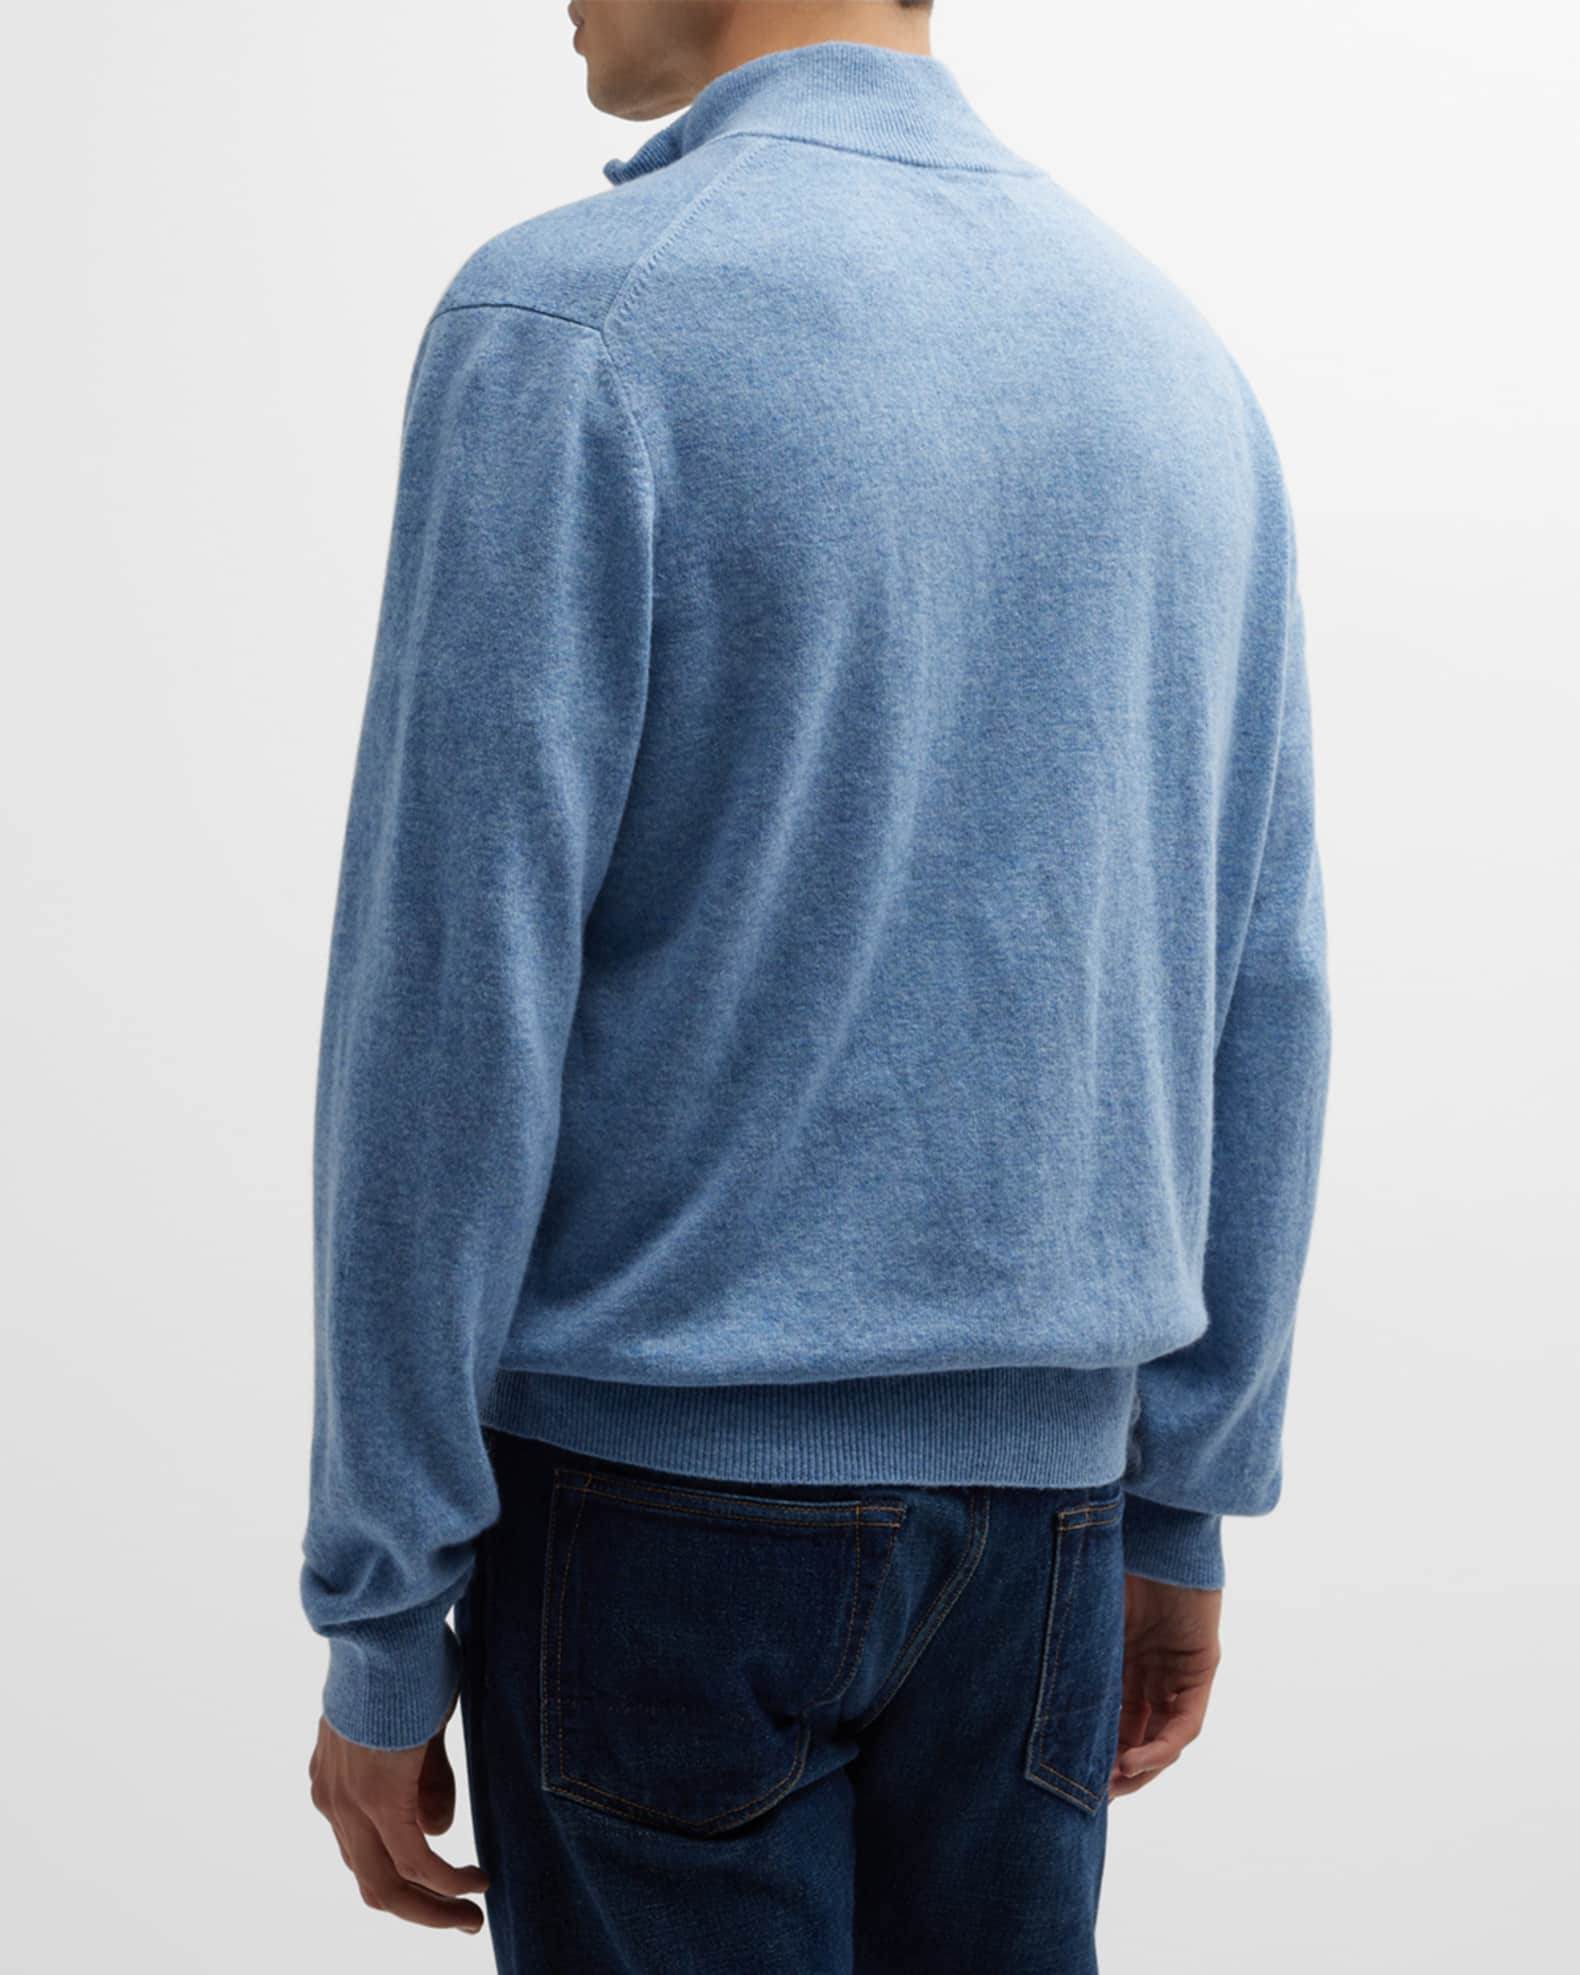 Neiman Marcus Men's Wool-Cashmere 1/4-Zip Sweater | Neiman Marcus